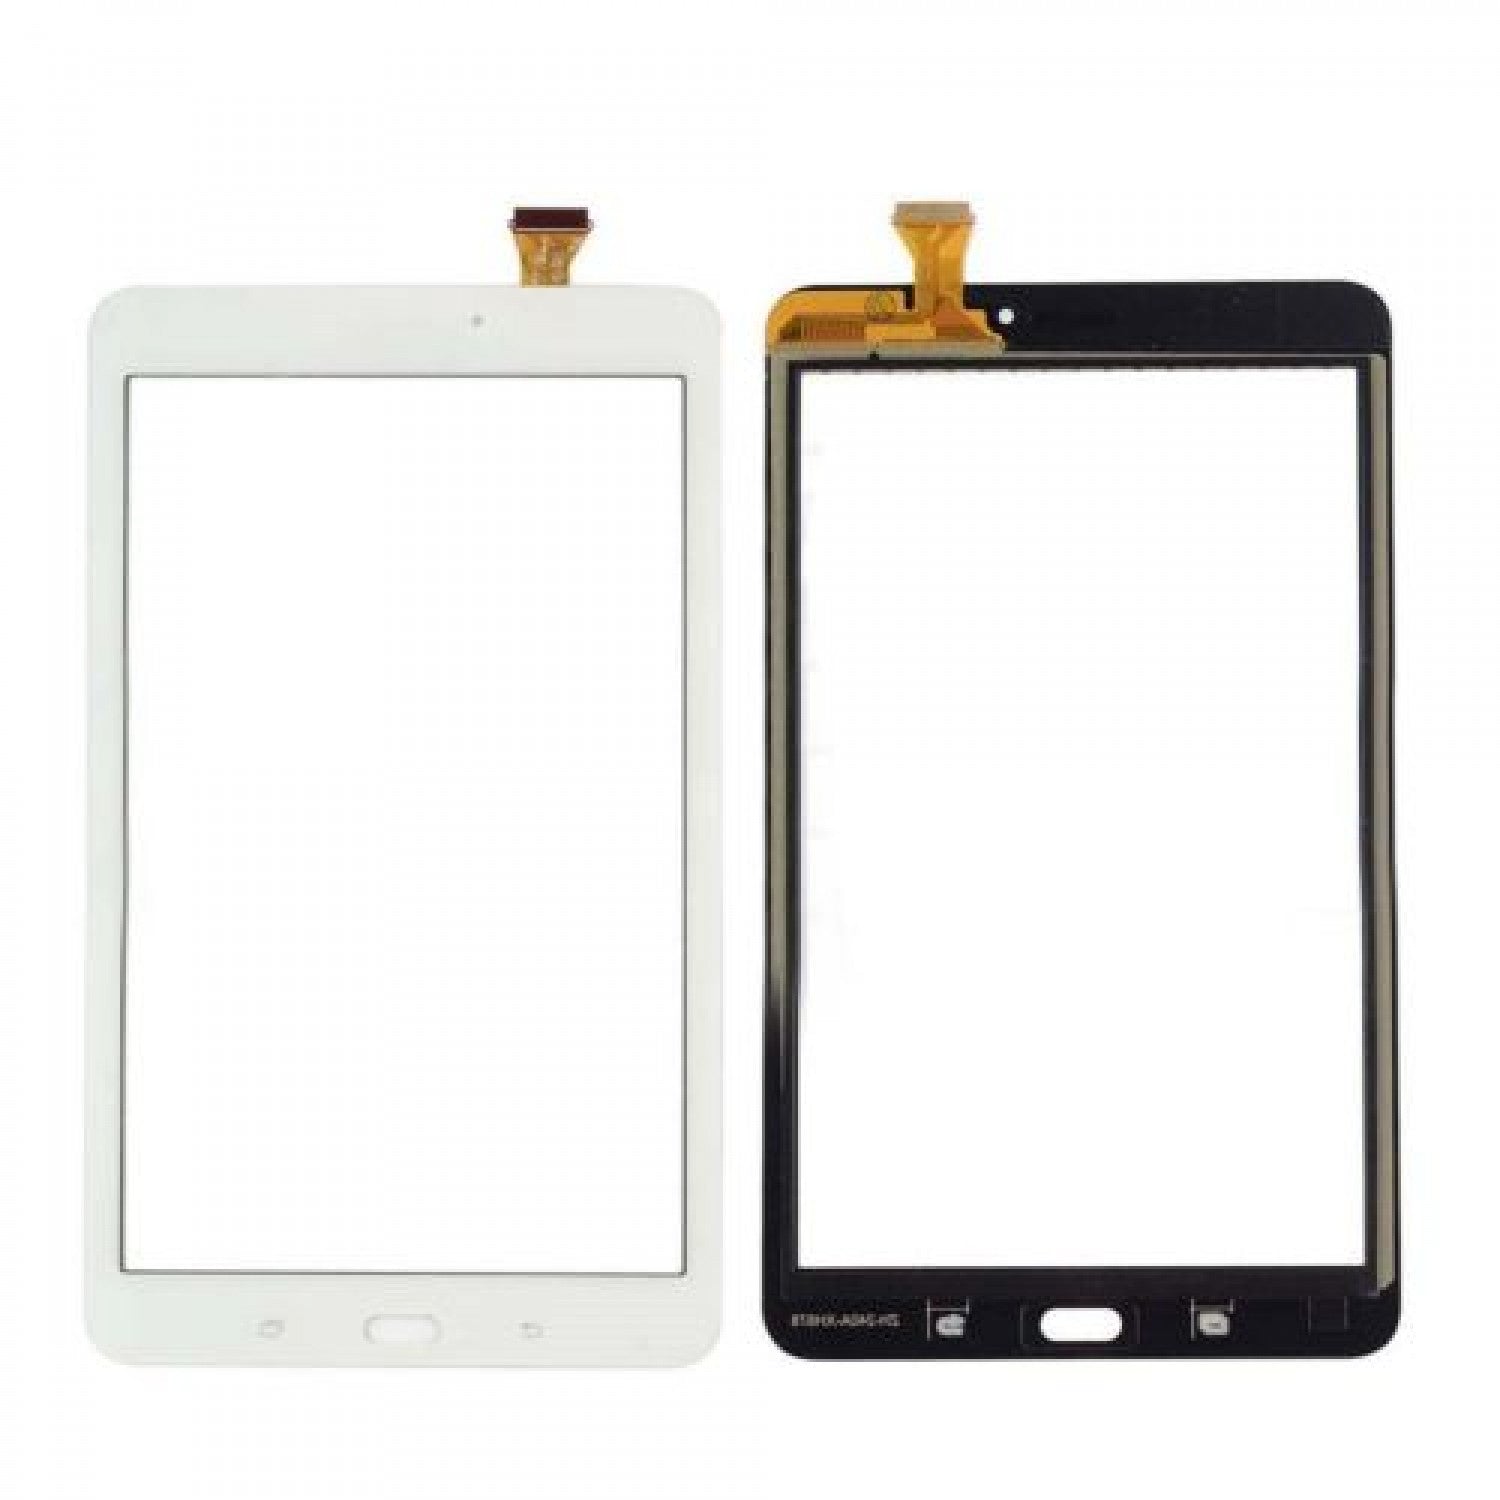 Samsung Galaxy Tab E 8.0 T377 Touch Digitizer